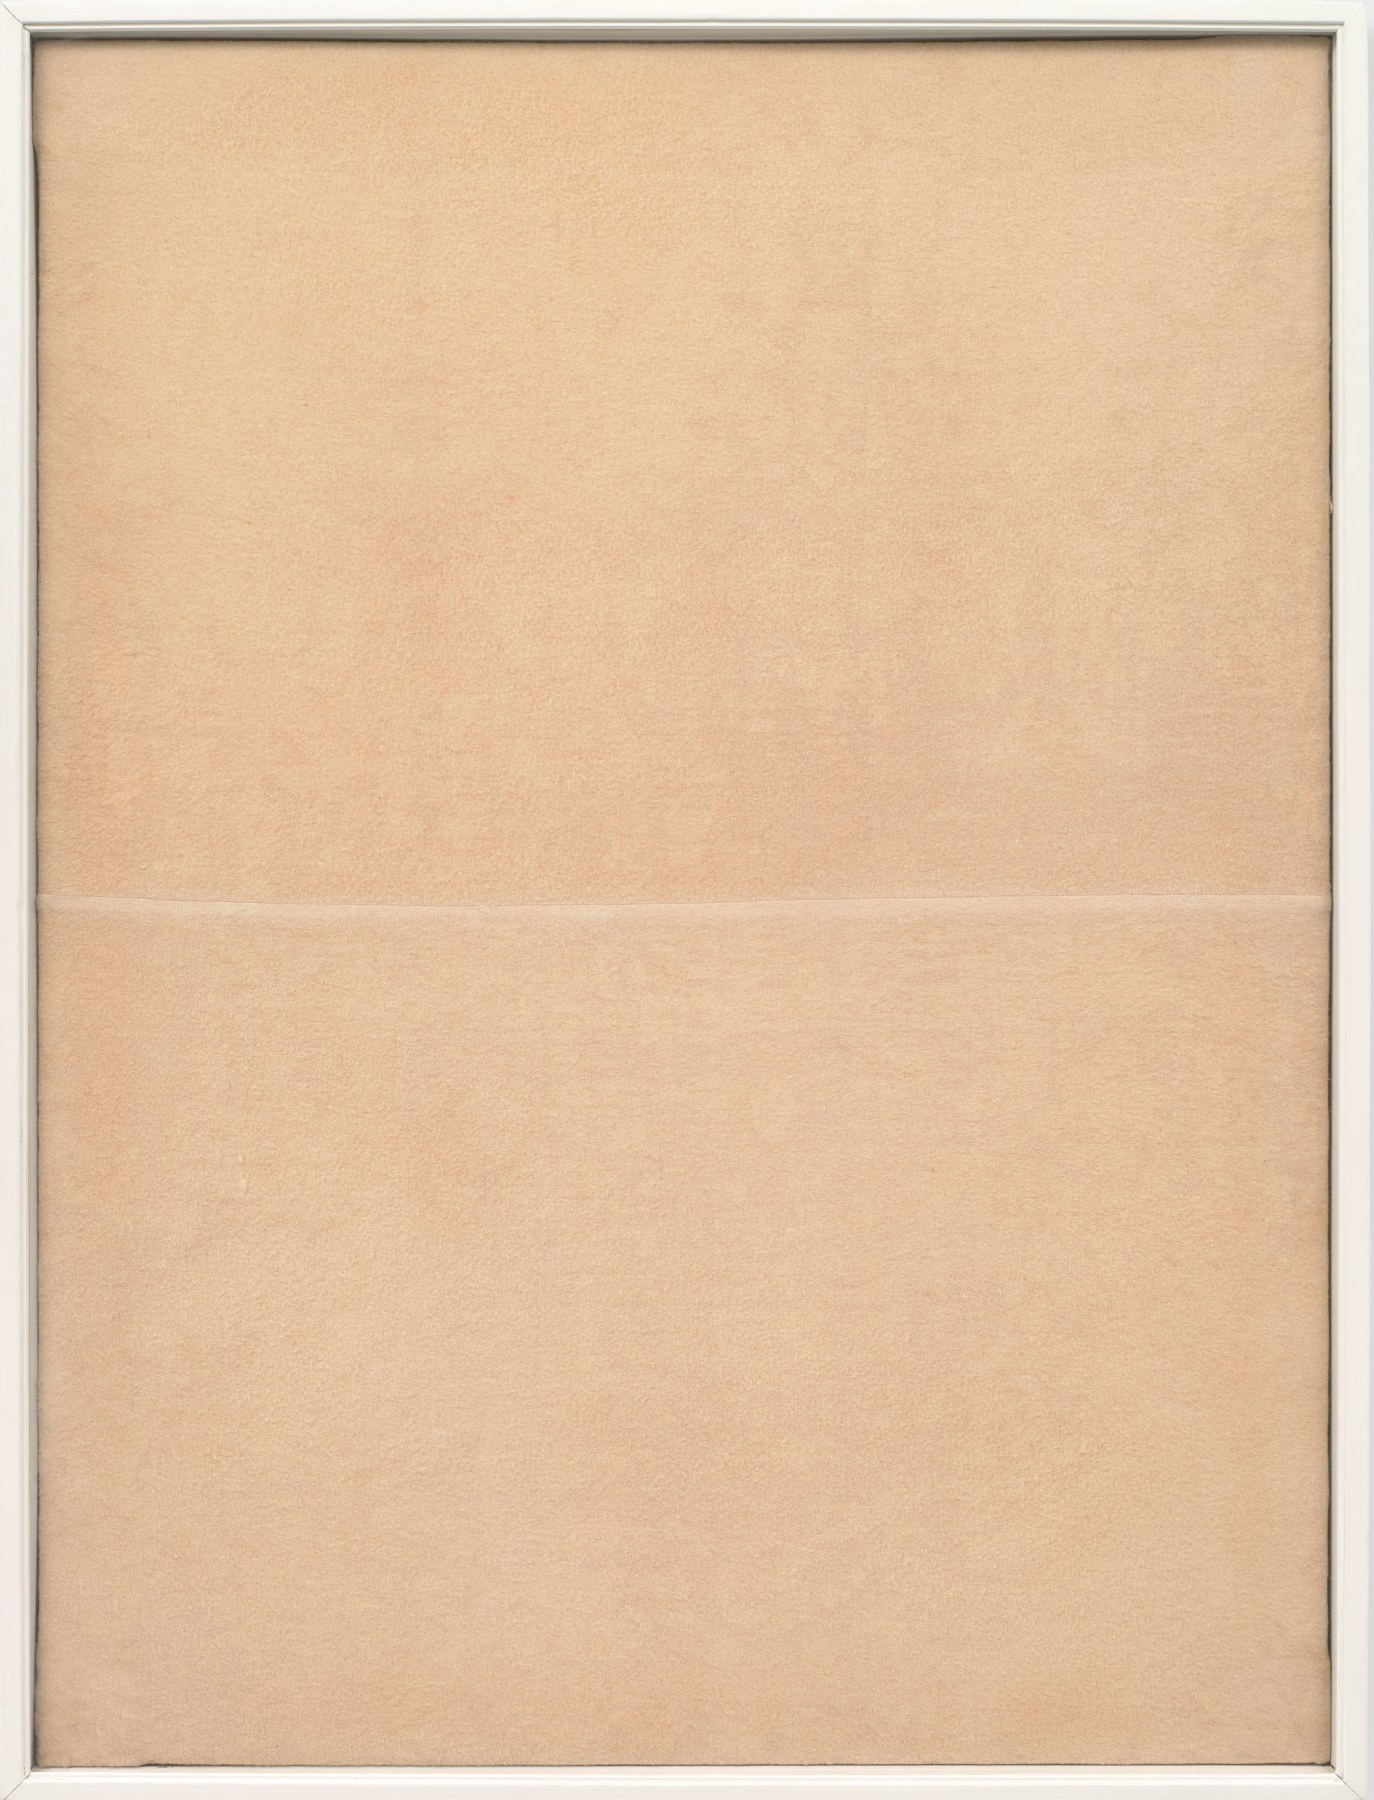 Piero Manzoni

&amp;ldquo;Achrome&amp;rdquo;, 1960

Sewn cloth

39 1/4 x 29 1/4 inches

99.5 x 74.5 cm

MAN 47